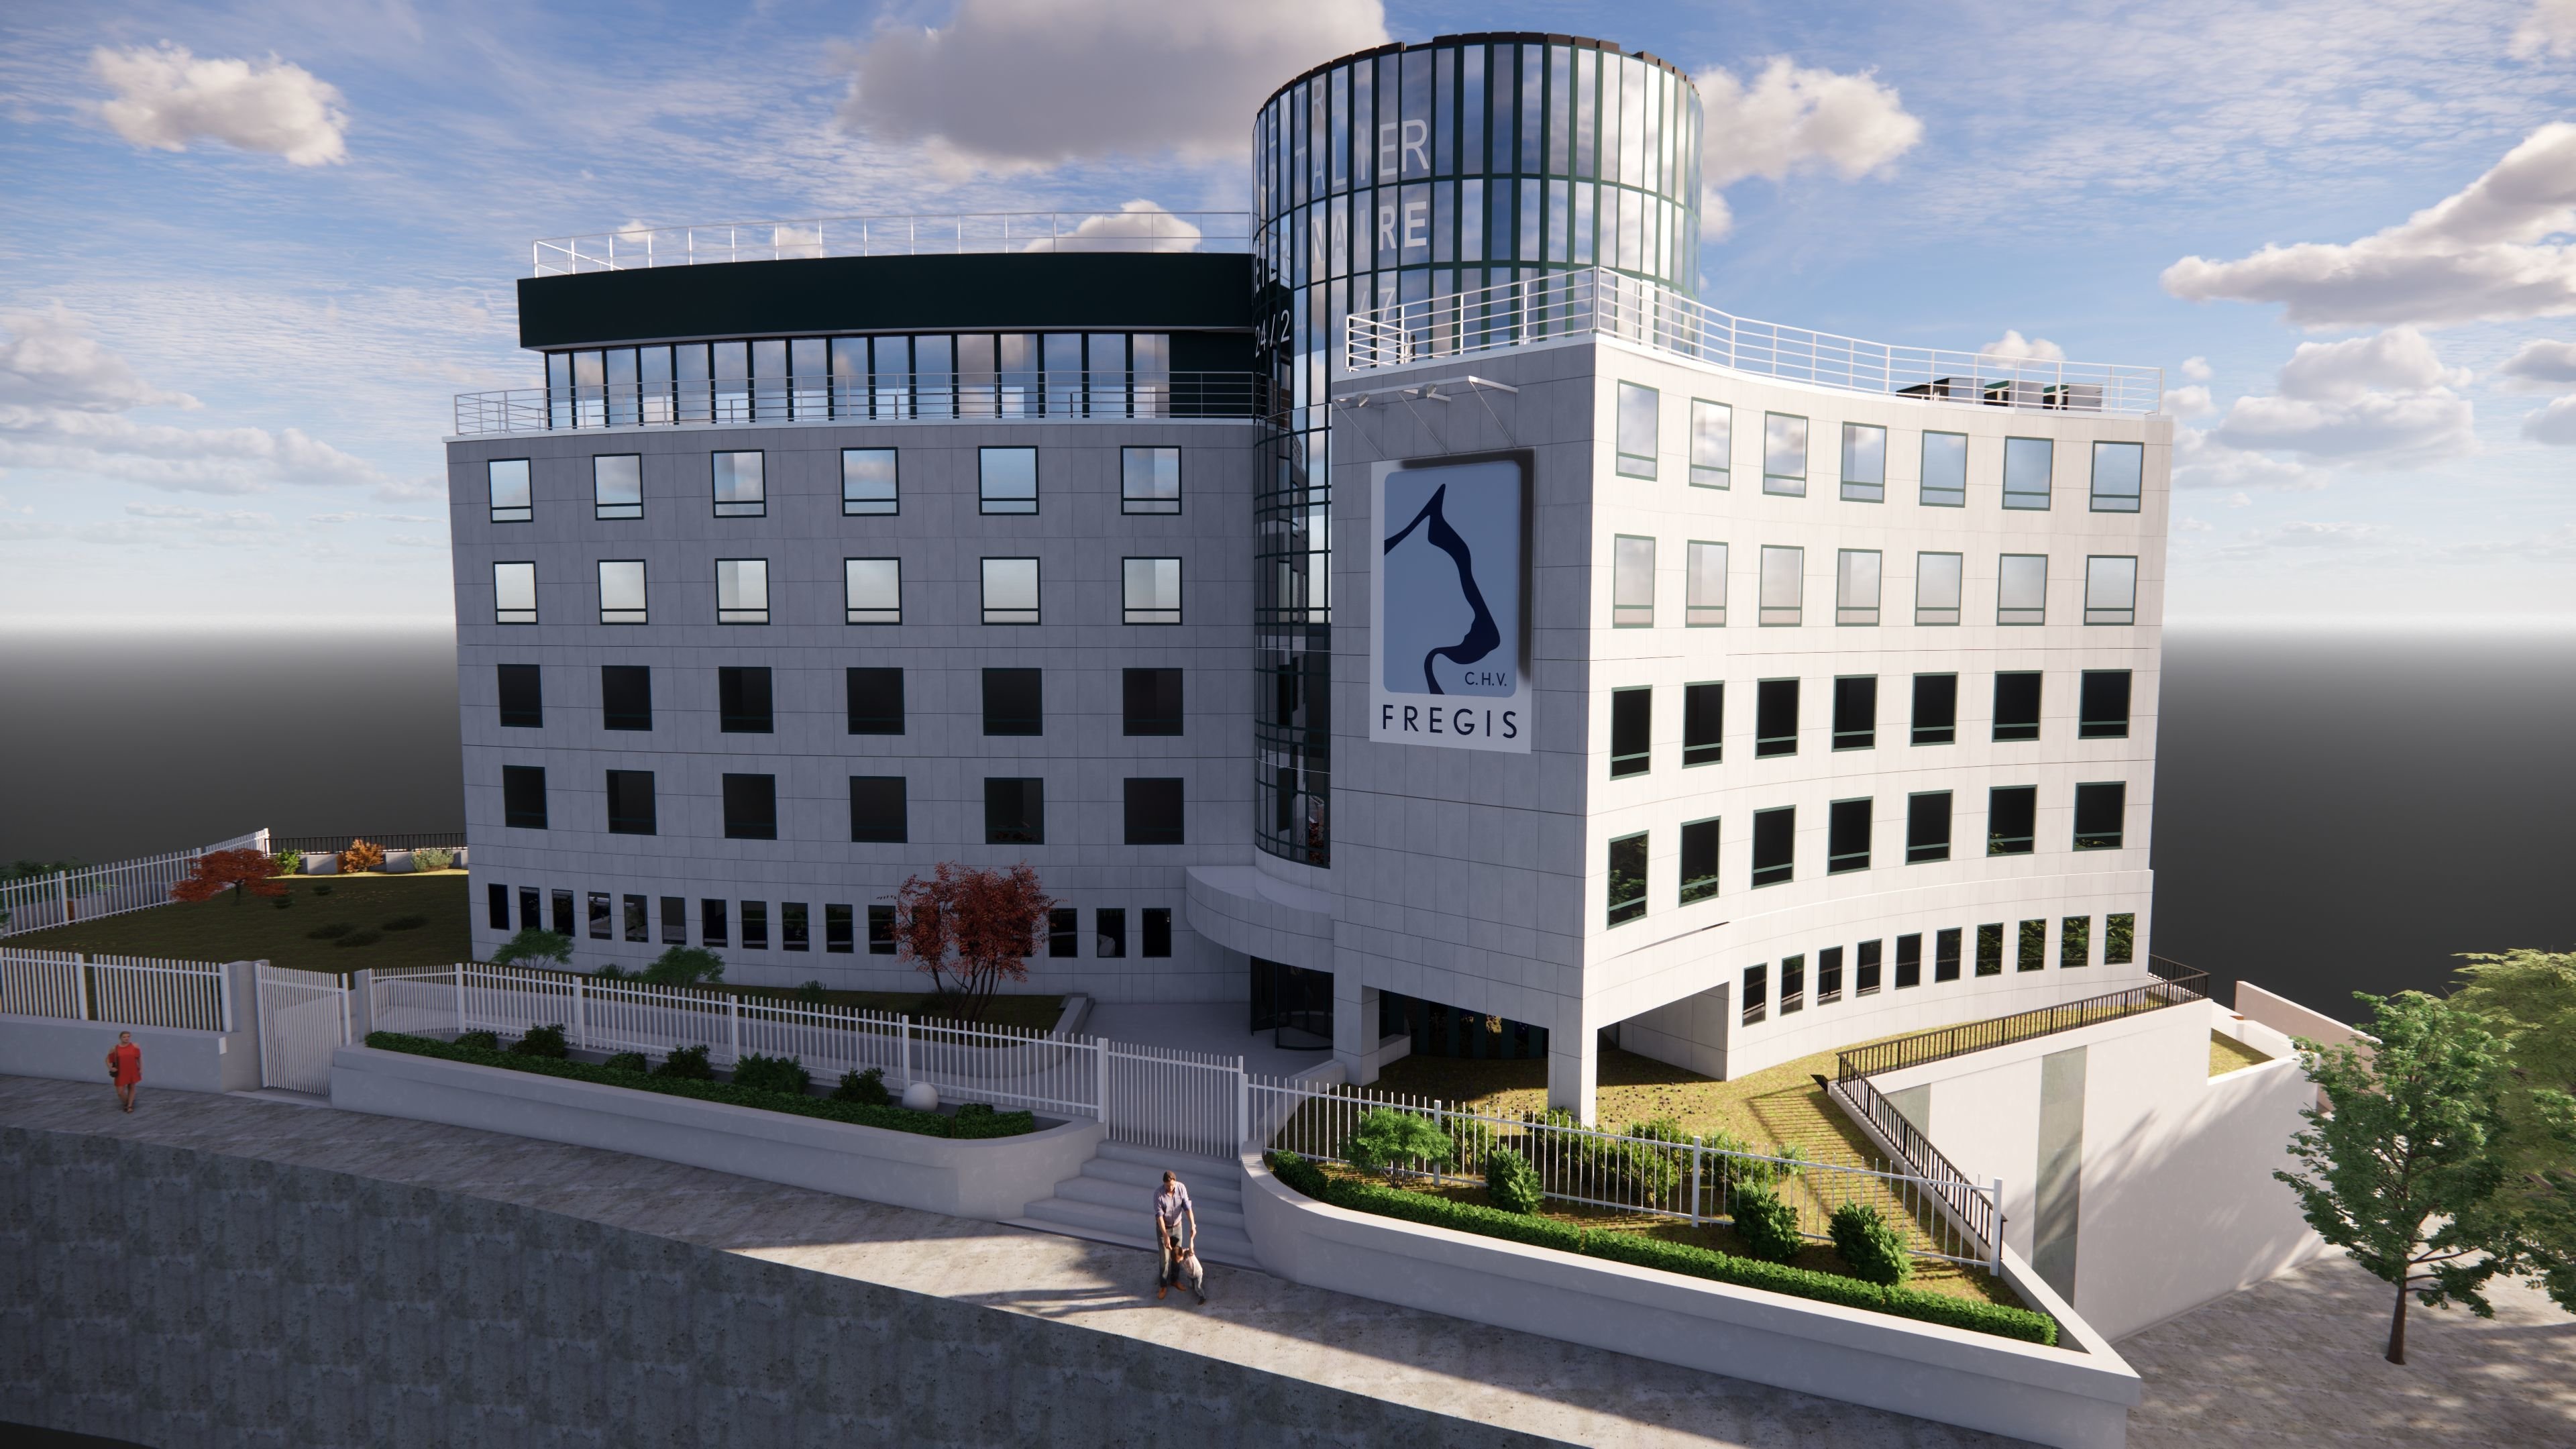 Le futur centre hospitalier vétérinaire (CHV) Frégis va s'installer dans un ancien bâtiment de la société IBM, situé près de la porte d'Italie (Paris XIIIe). Il ouvrira ses portes le 17 avril. DR